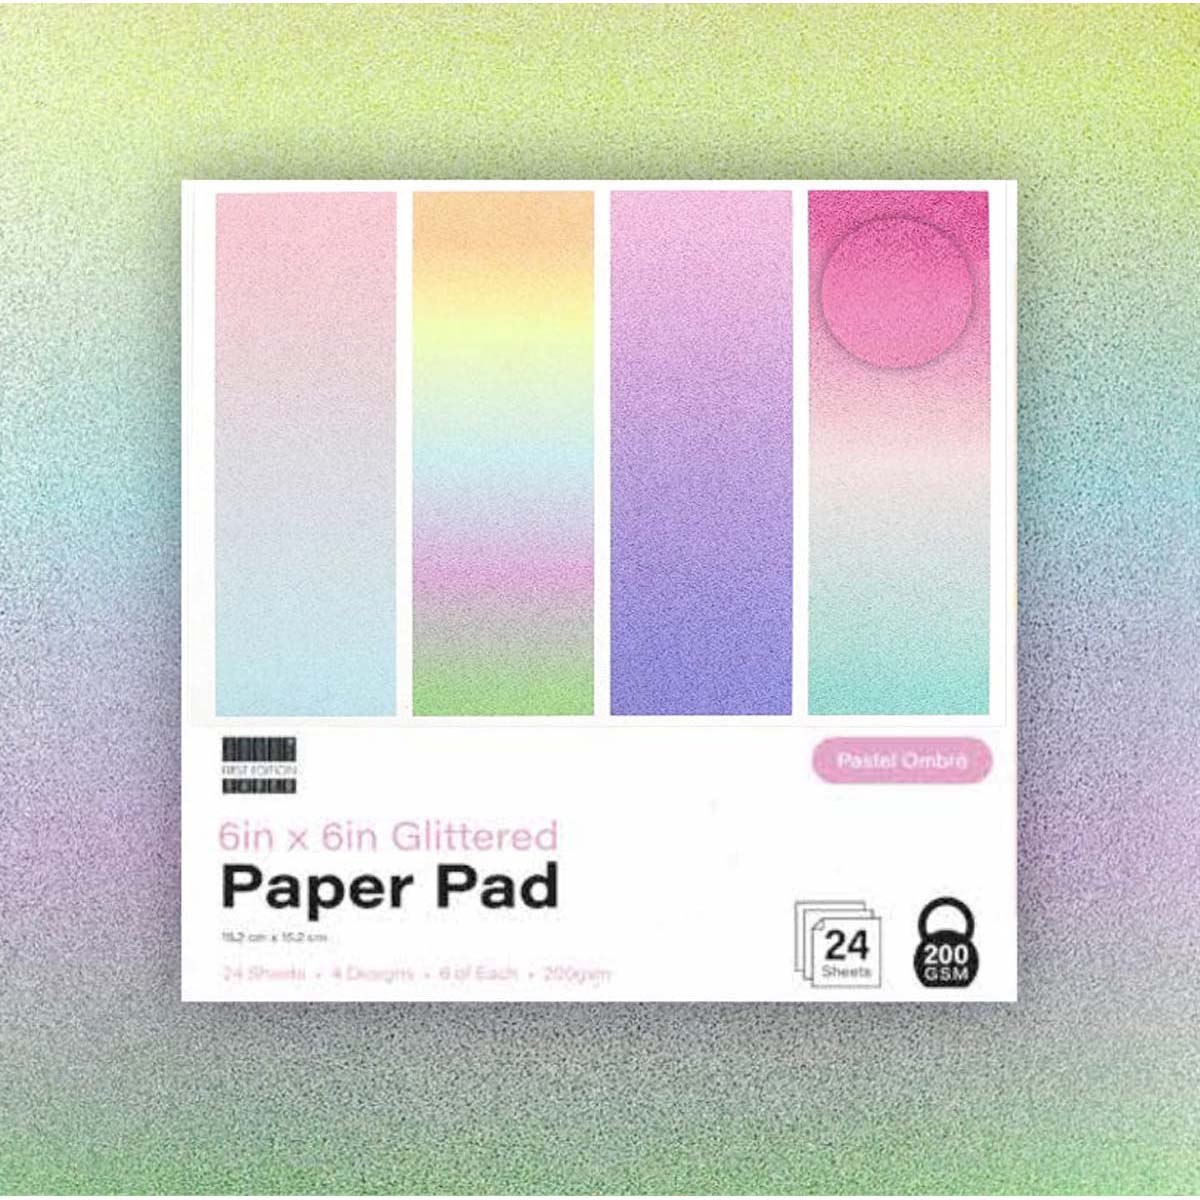 Première édition - 6 pouces x 6 pouces de papier pailleté pad pastel ombre